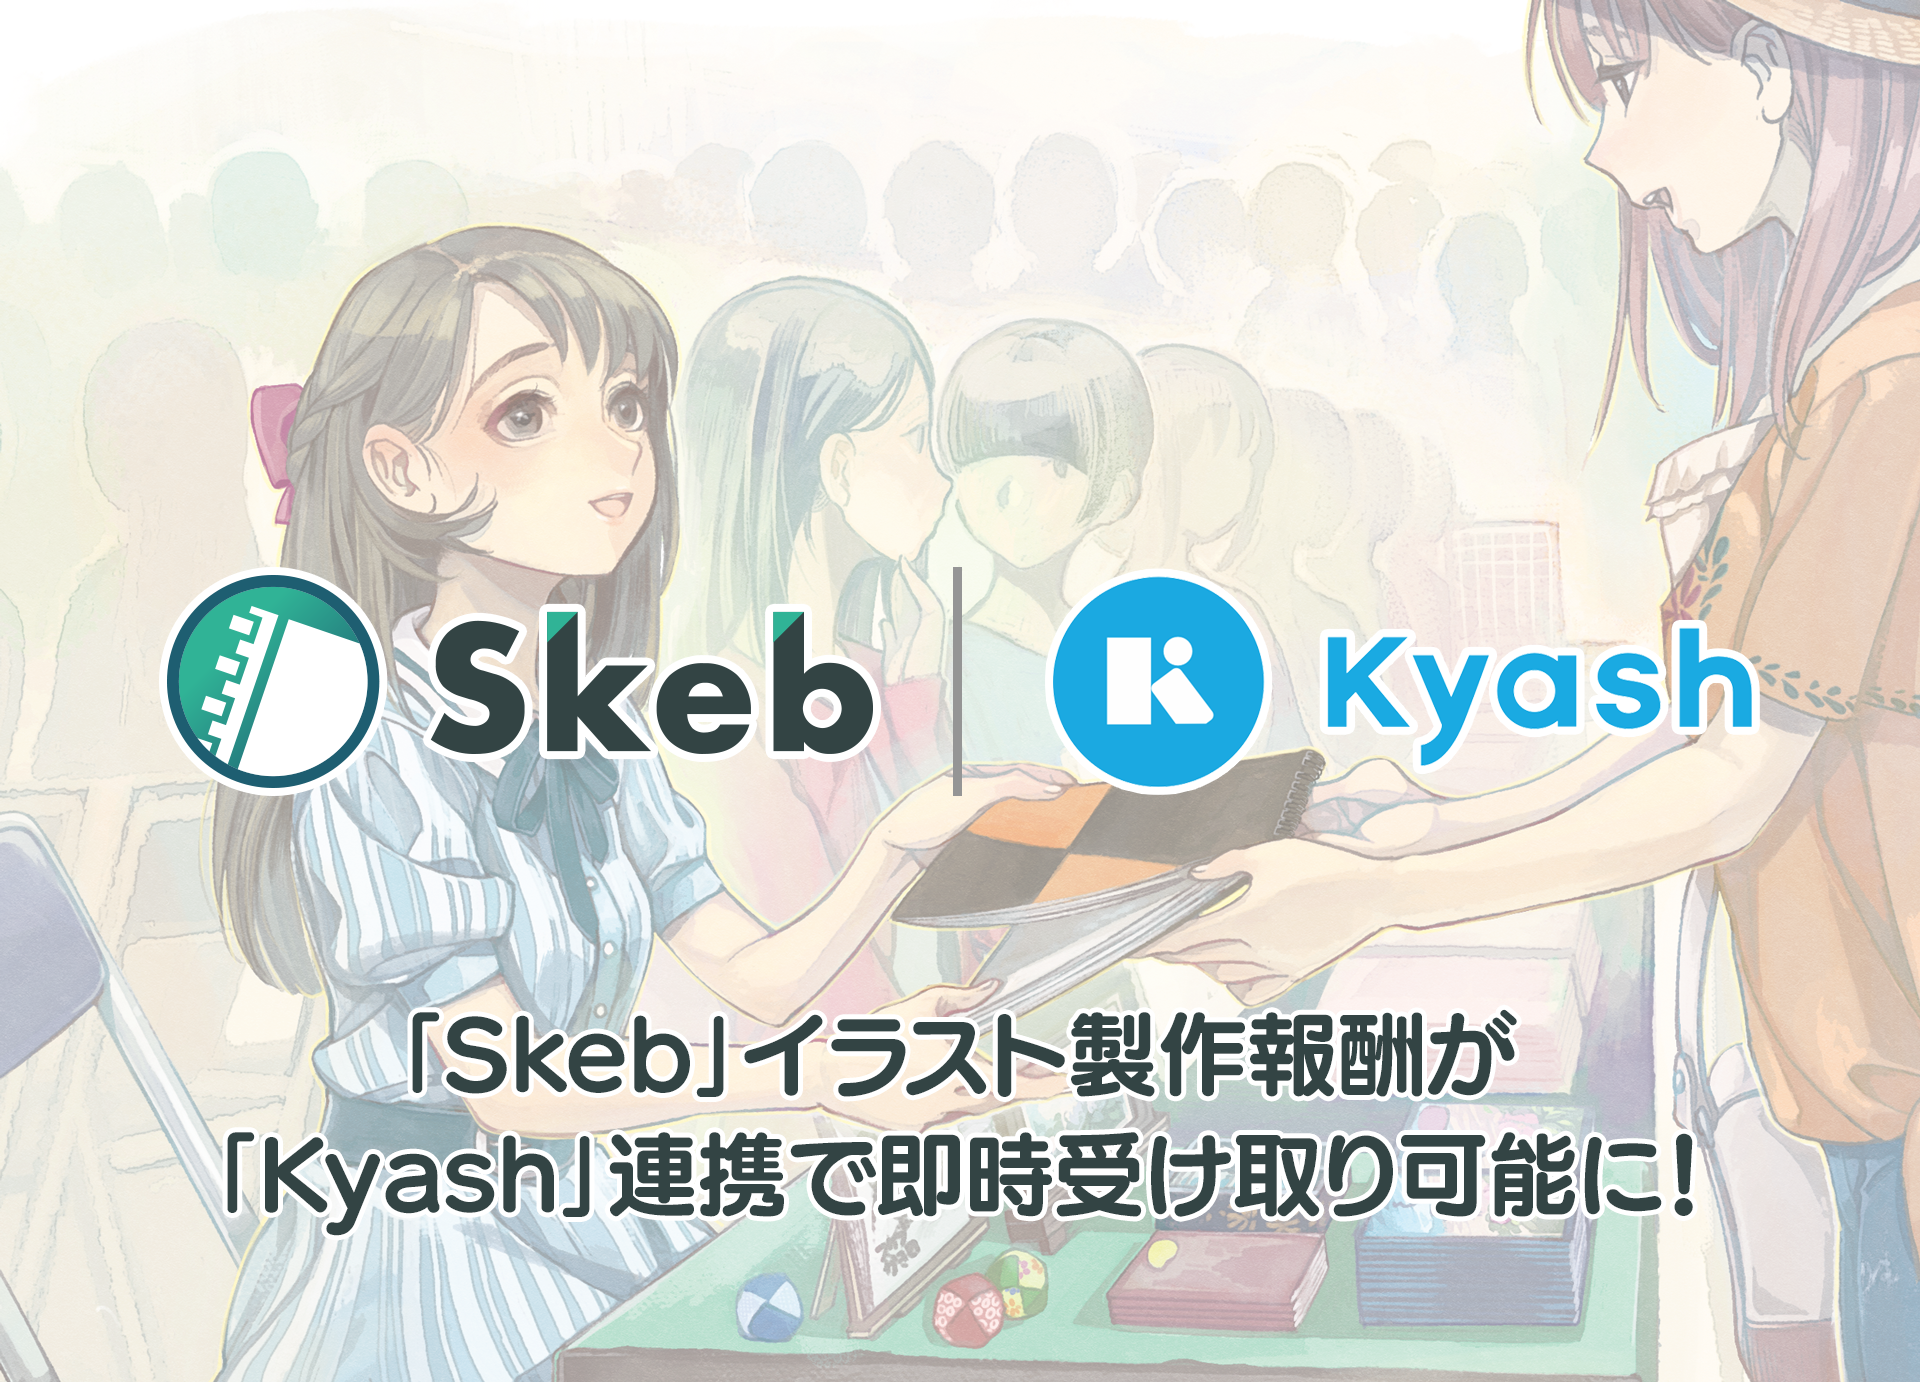 イラストコミッションサービス Skeb の報酬がウォレットアプリ Kyash で受け取り可能に 株式会社スケブのプレスリリース